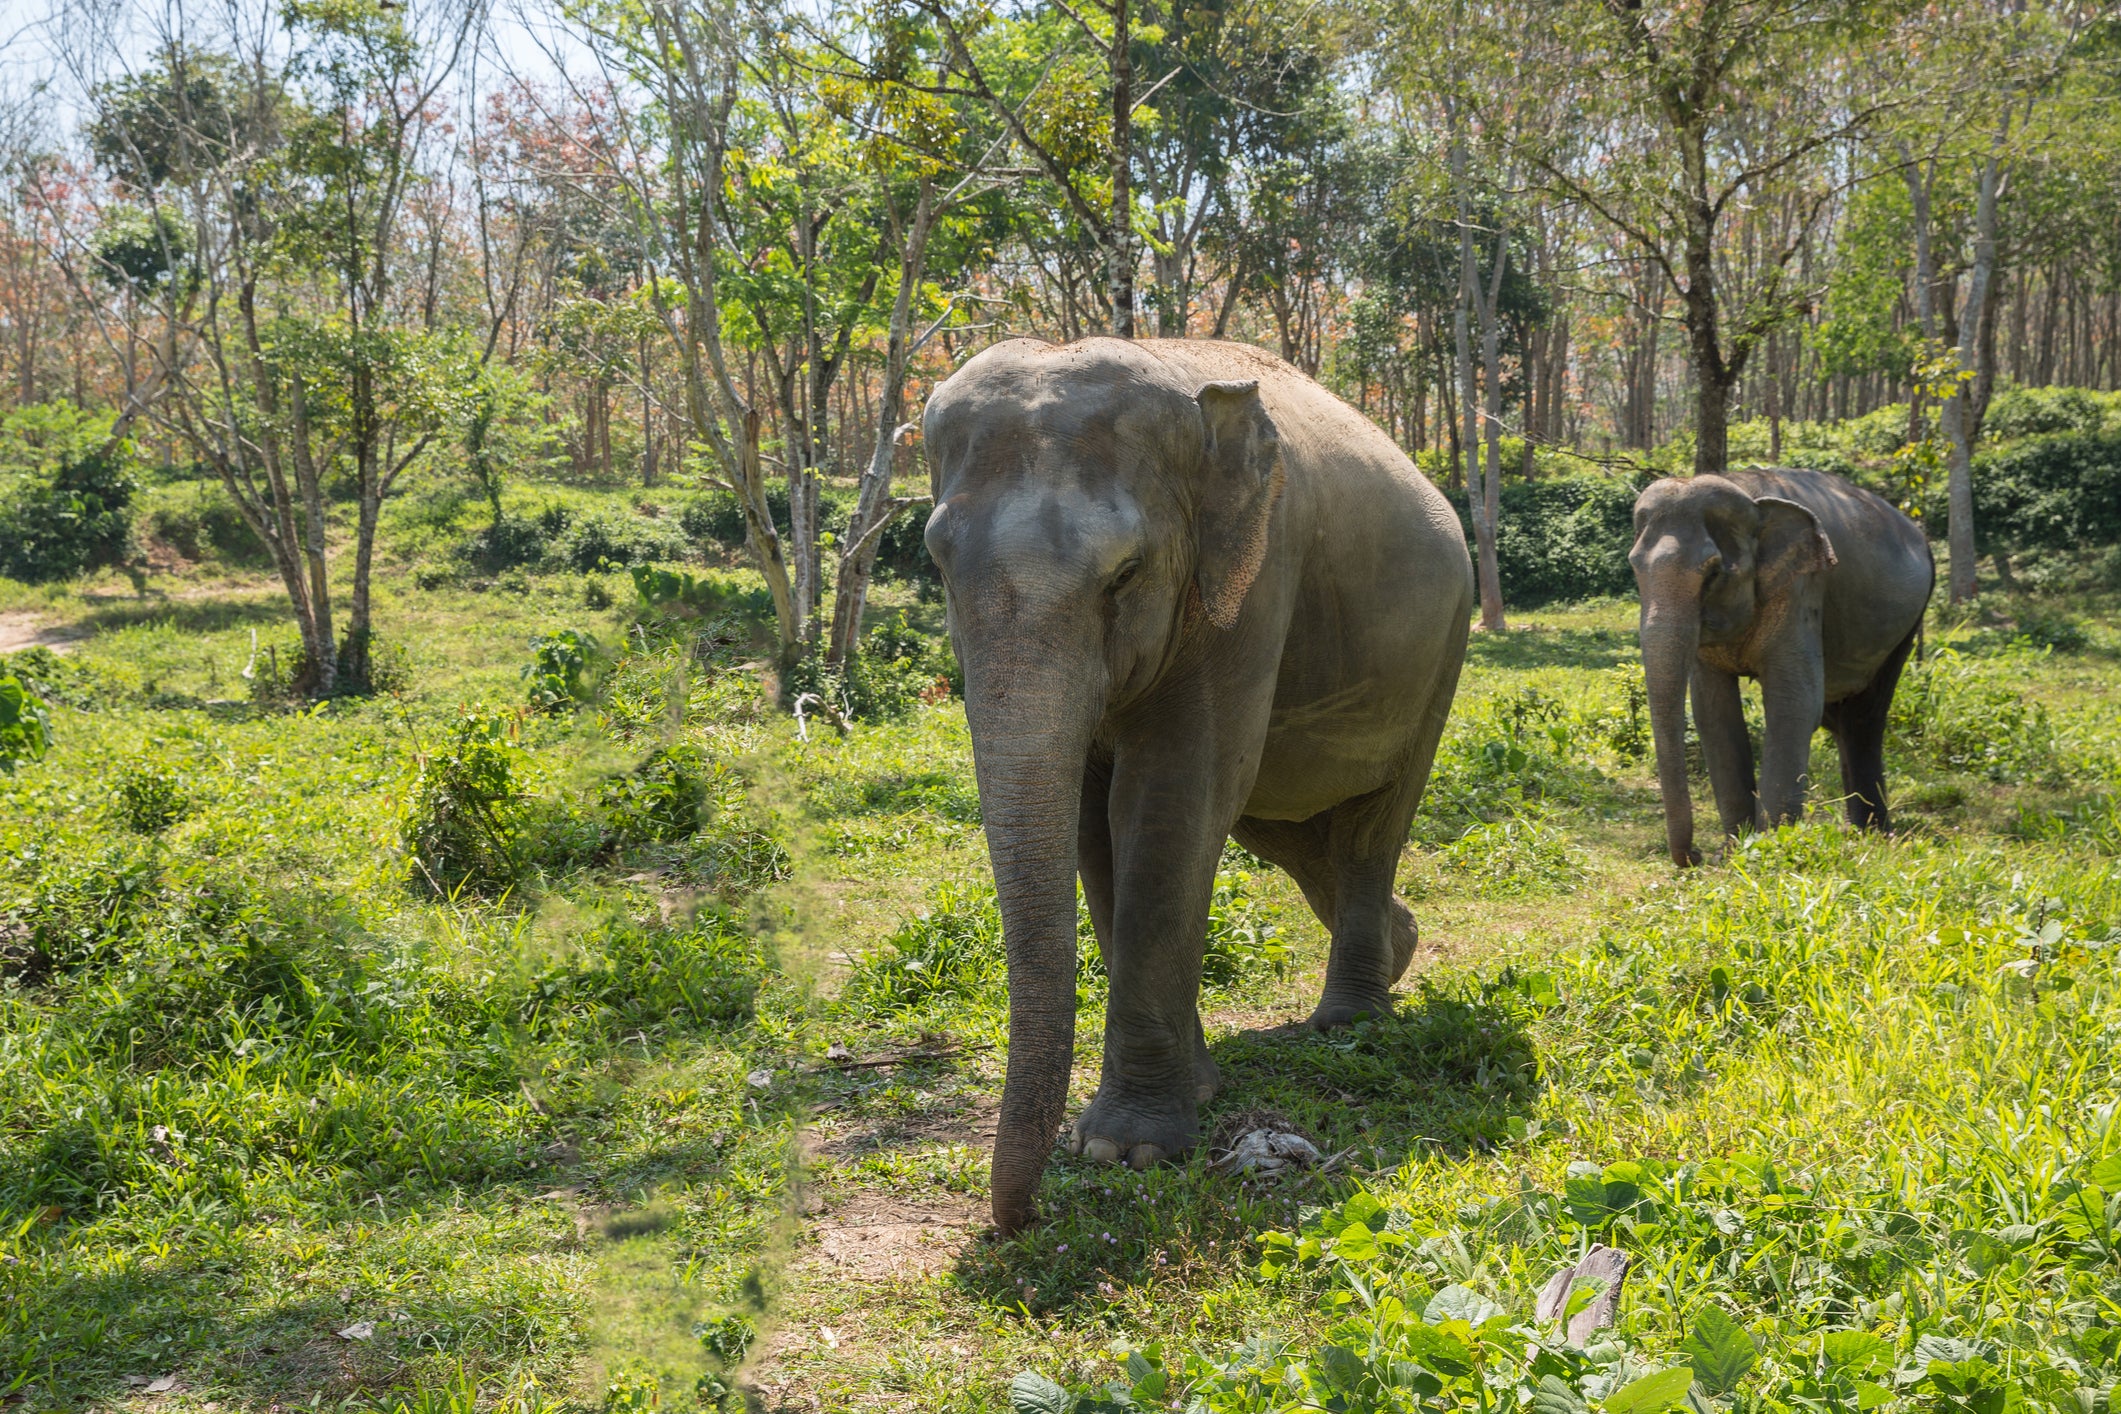 See elephants roam free in the Khao Sok National Park near Phuket